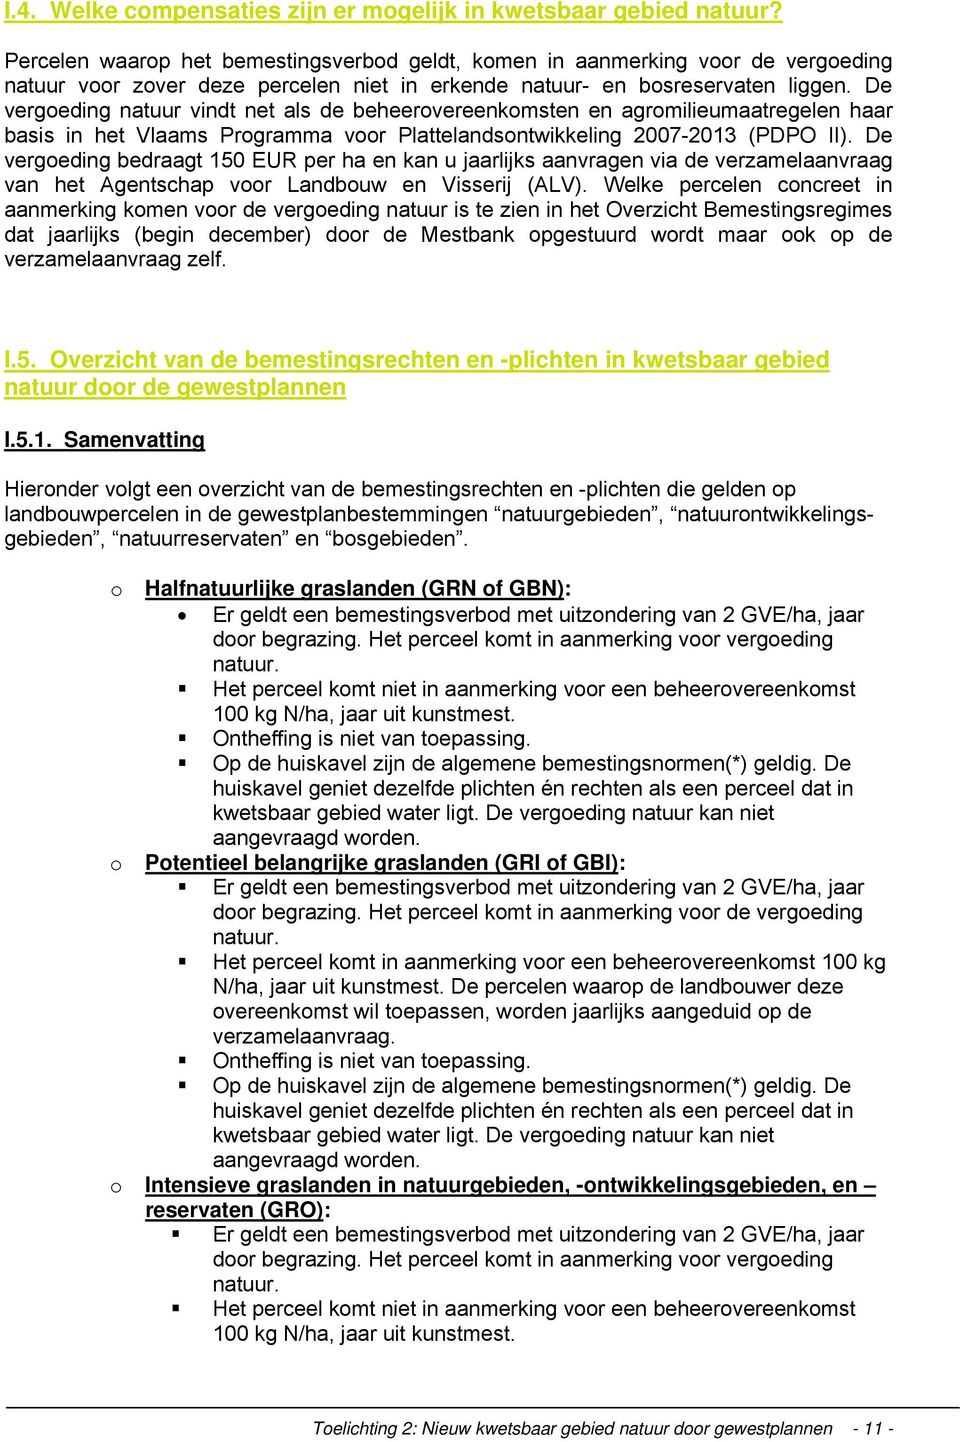 De vergoeding natuur vindt net als de beheerovereenkomsten en agromilieumaatregelen haar basis in het Vlaams Programma voor Plattelandsontwikkeling 2007-2013 (PDPO II).